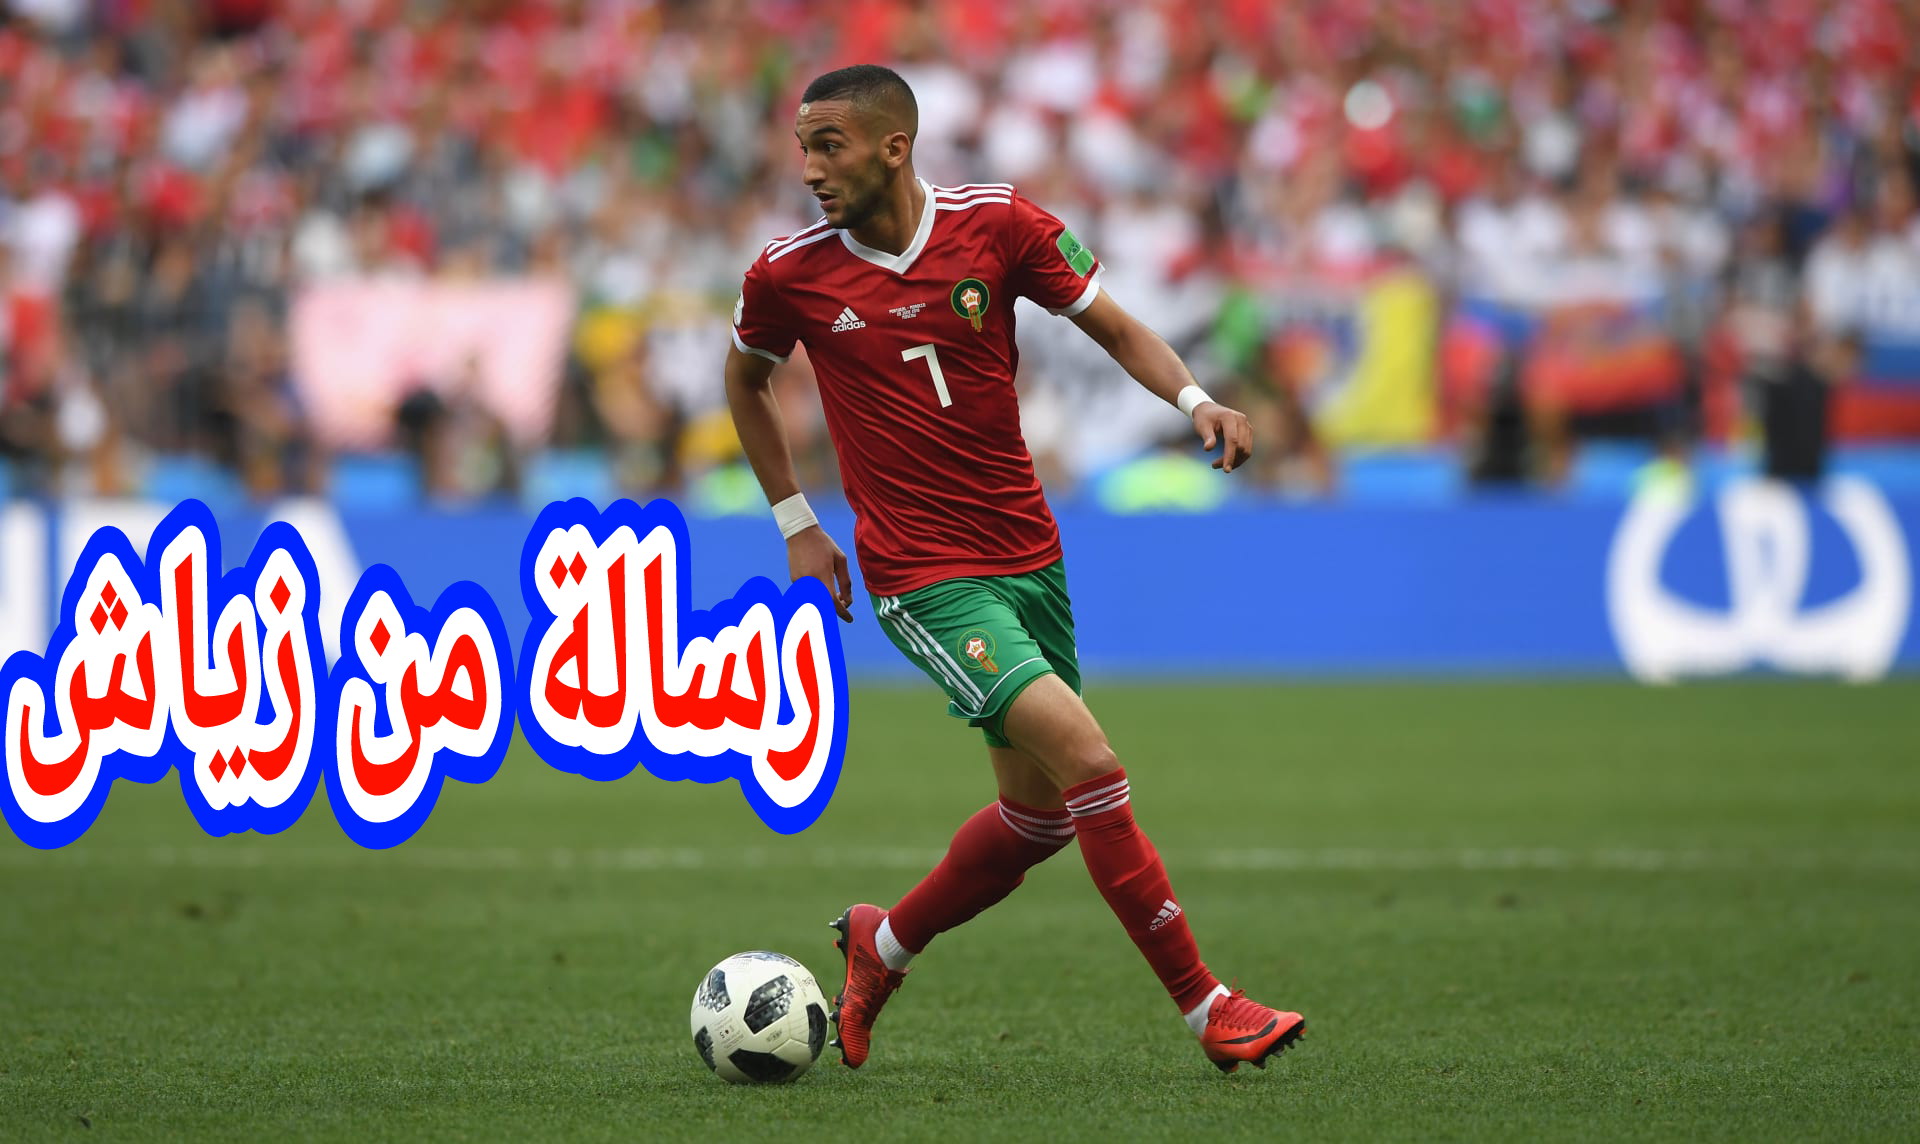 زياش يوجه شكر للجماهير المغربية ويقول للمغاربة:” نراكم يوم السبت”